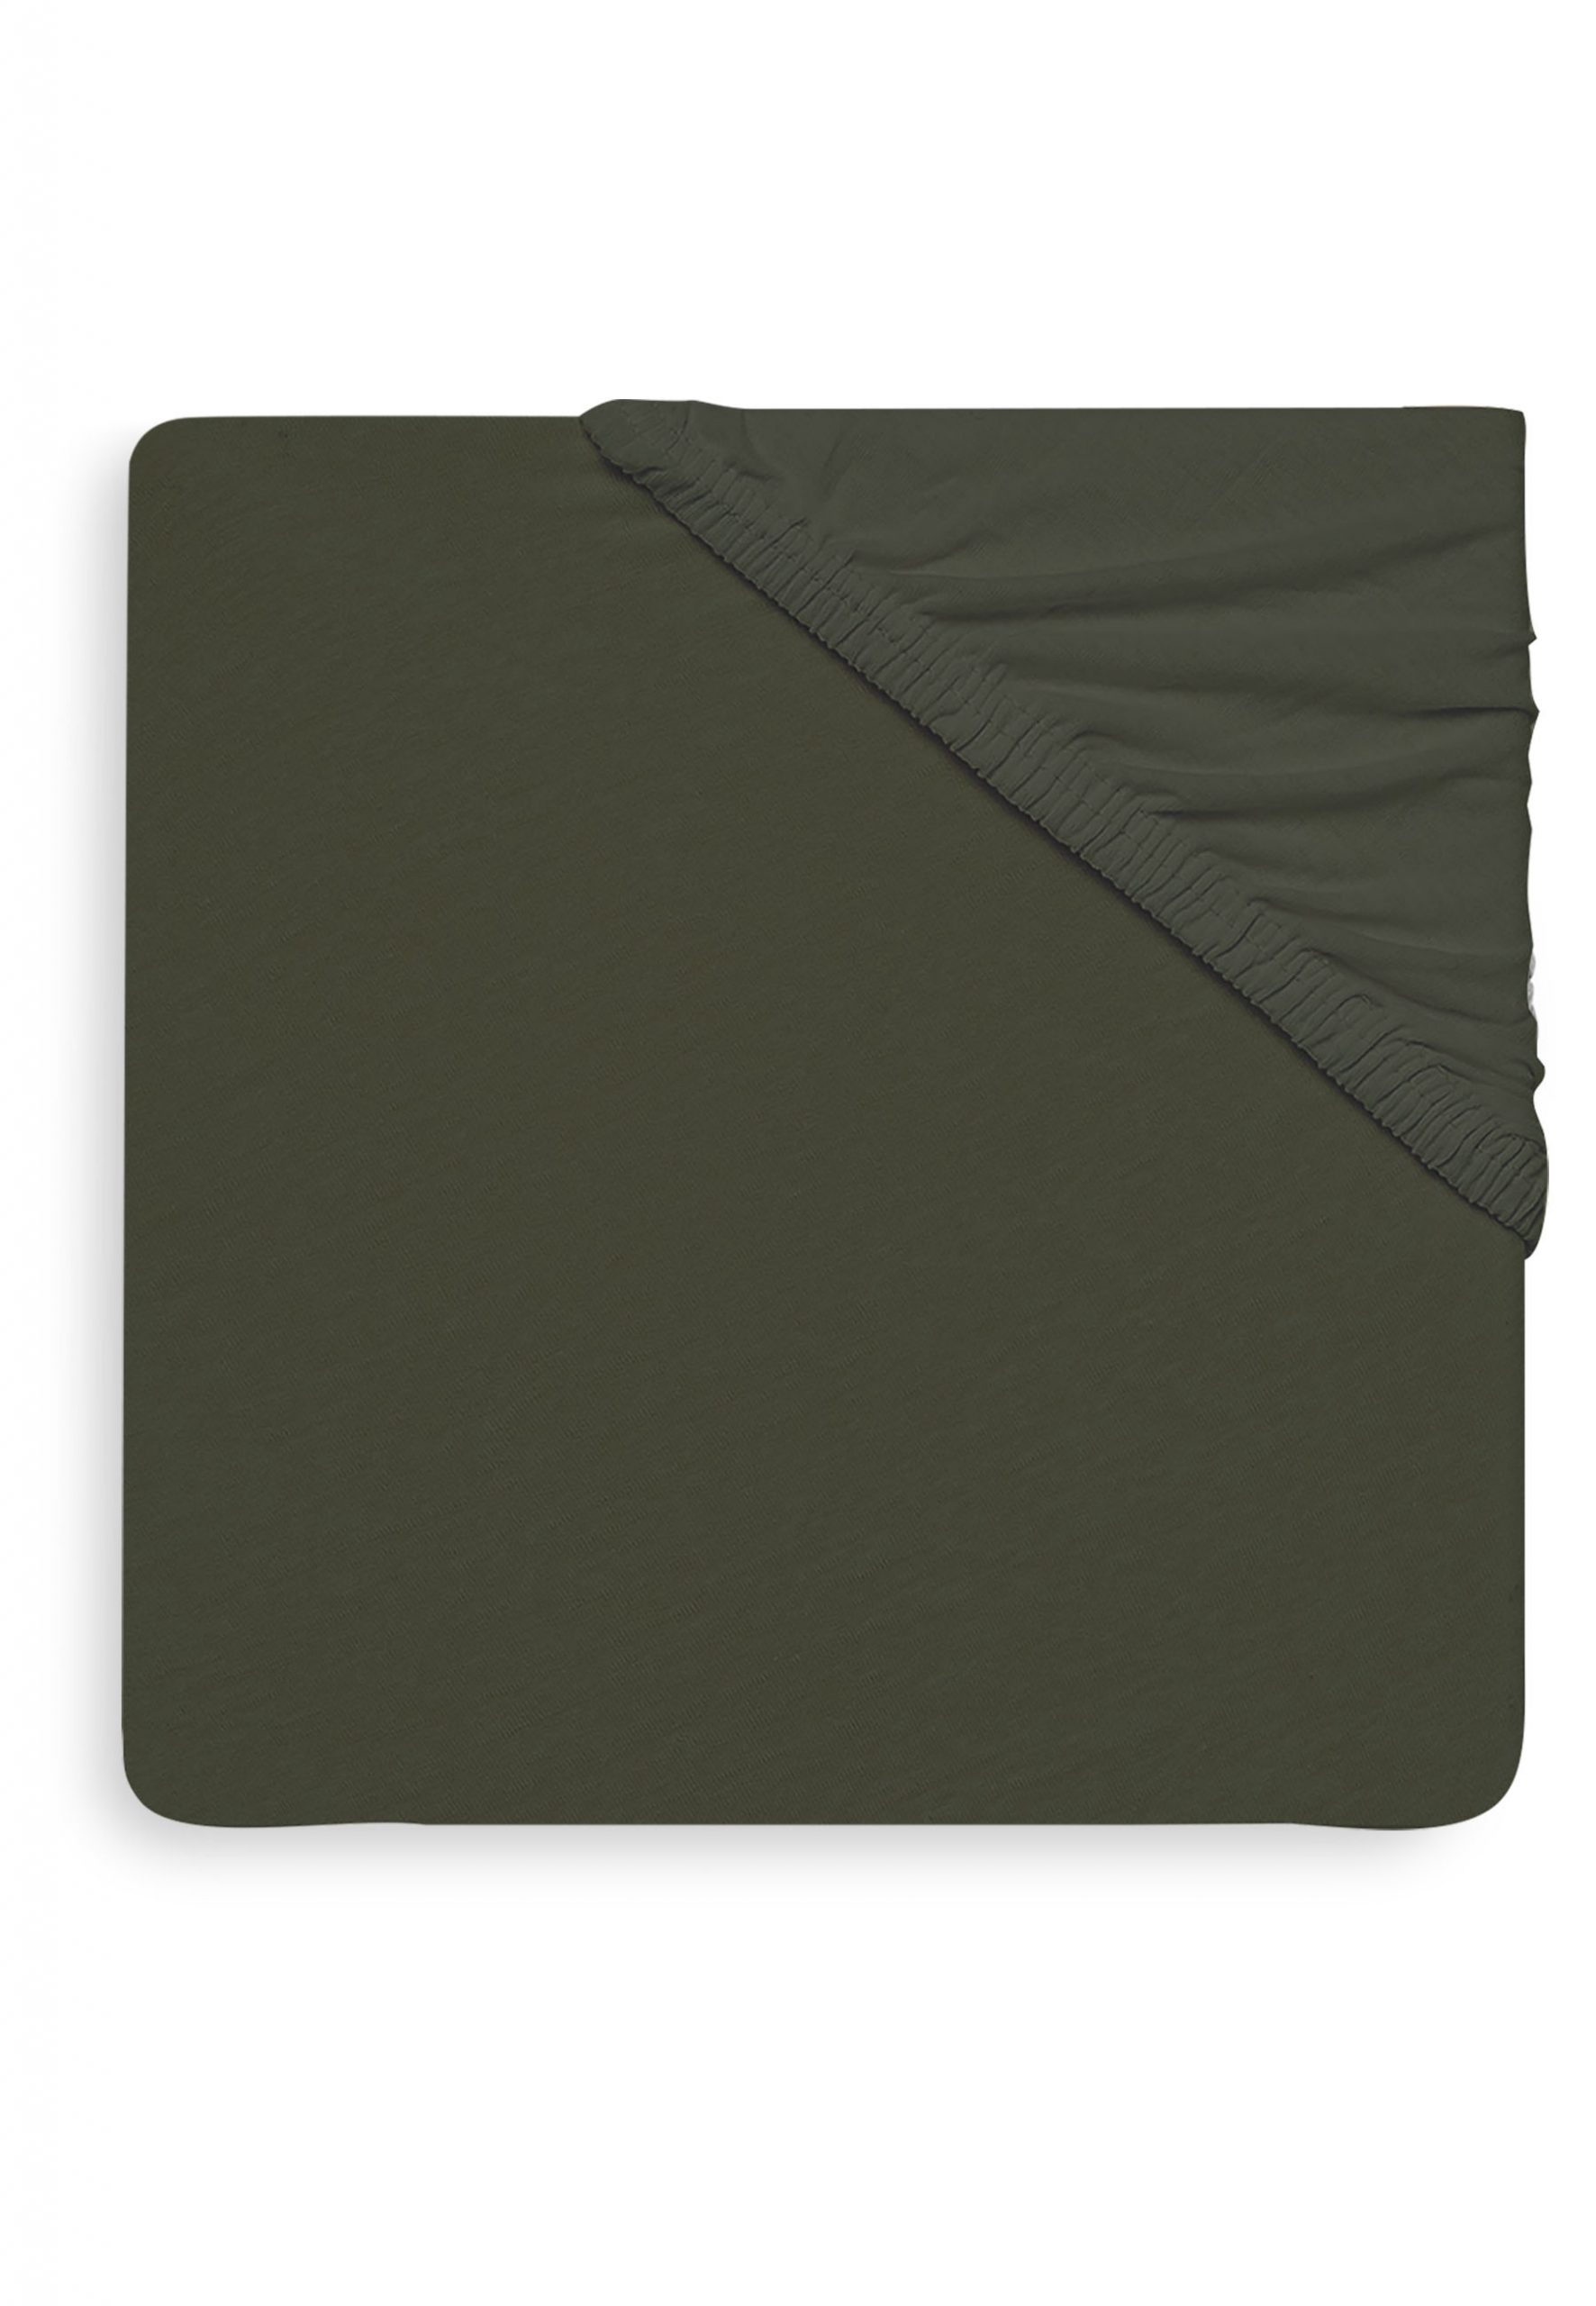 JOLLEIN – Drap housse jersey 60×120 divers coloris – Vert foncé